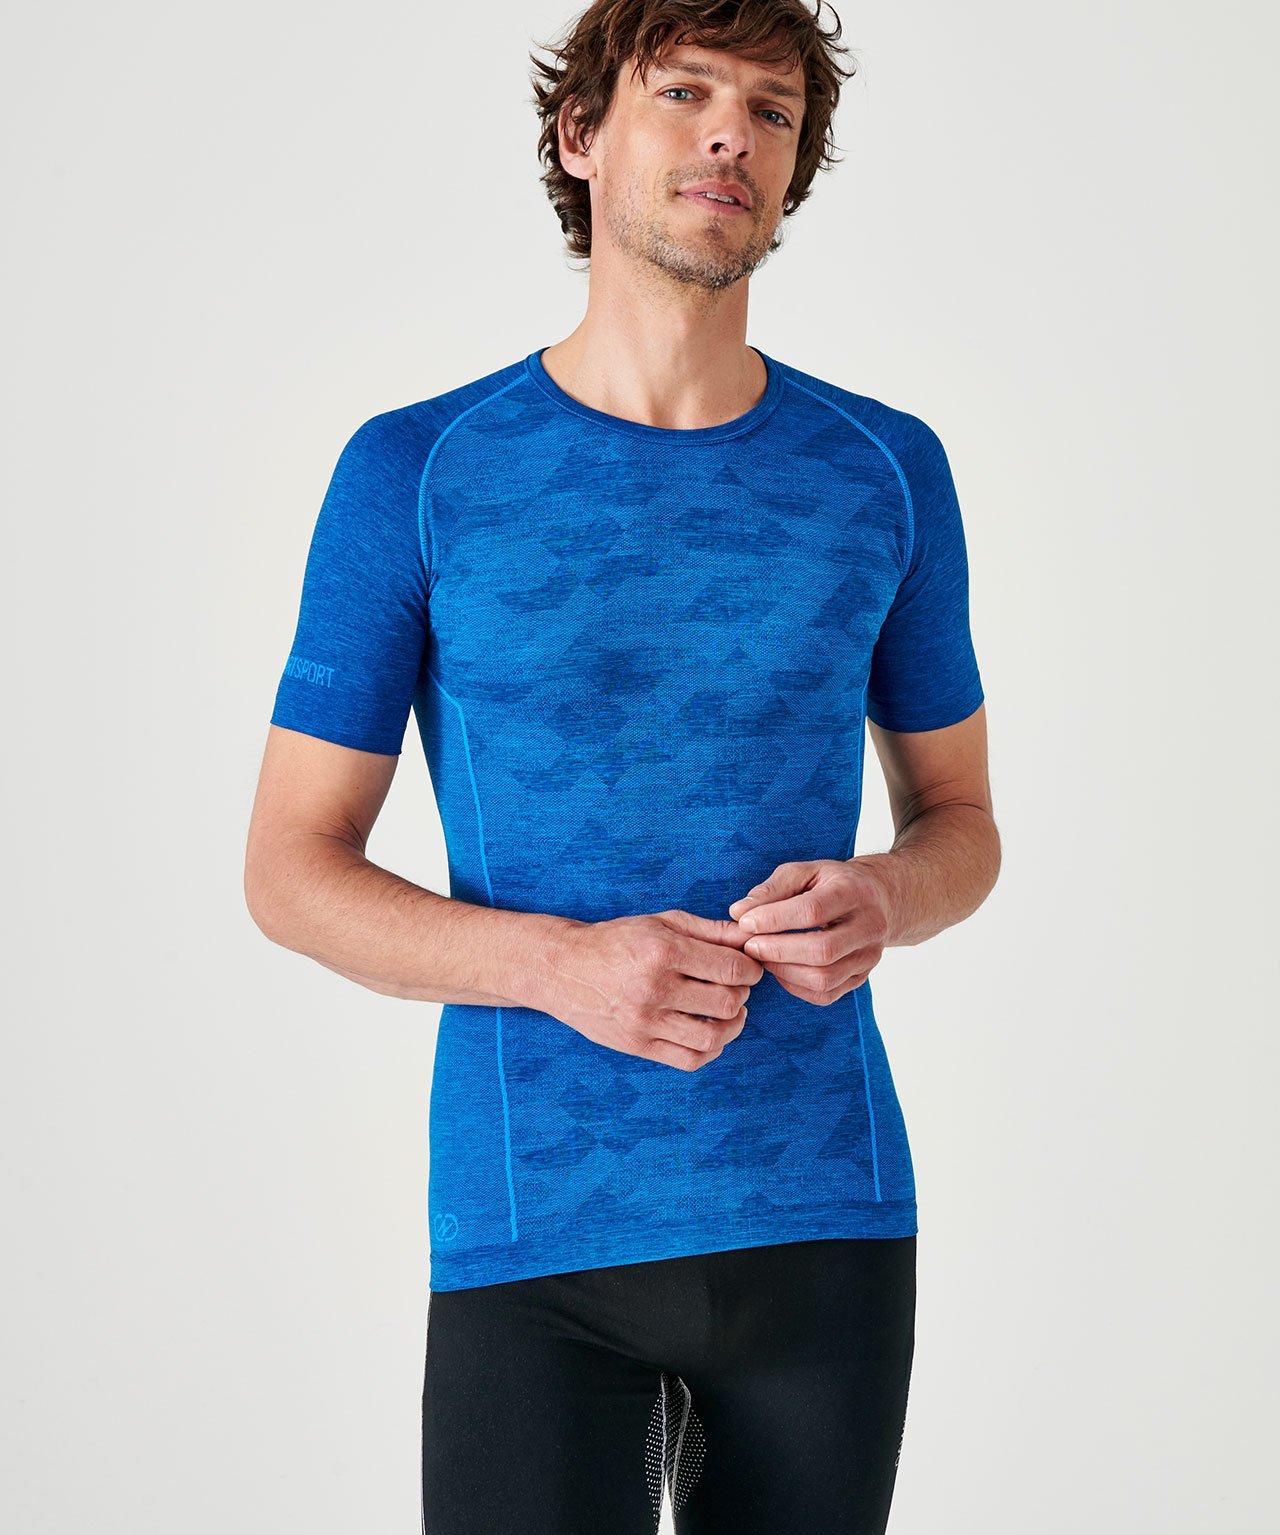 Climatyl--t-shirt Dynamic, . Herren Blau L/XL von Damart